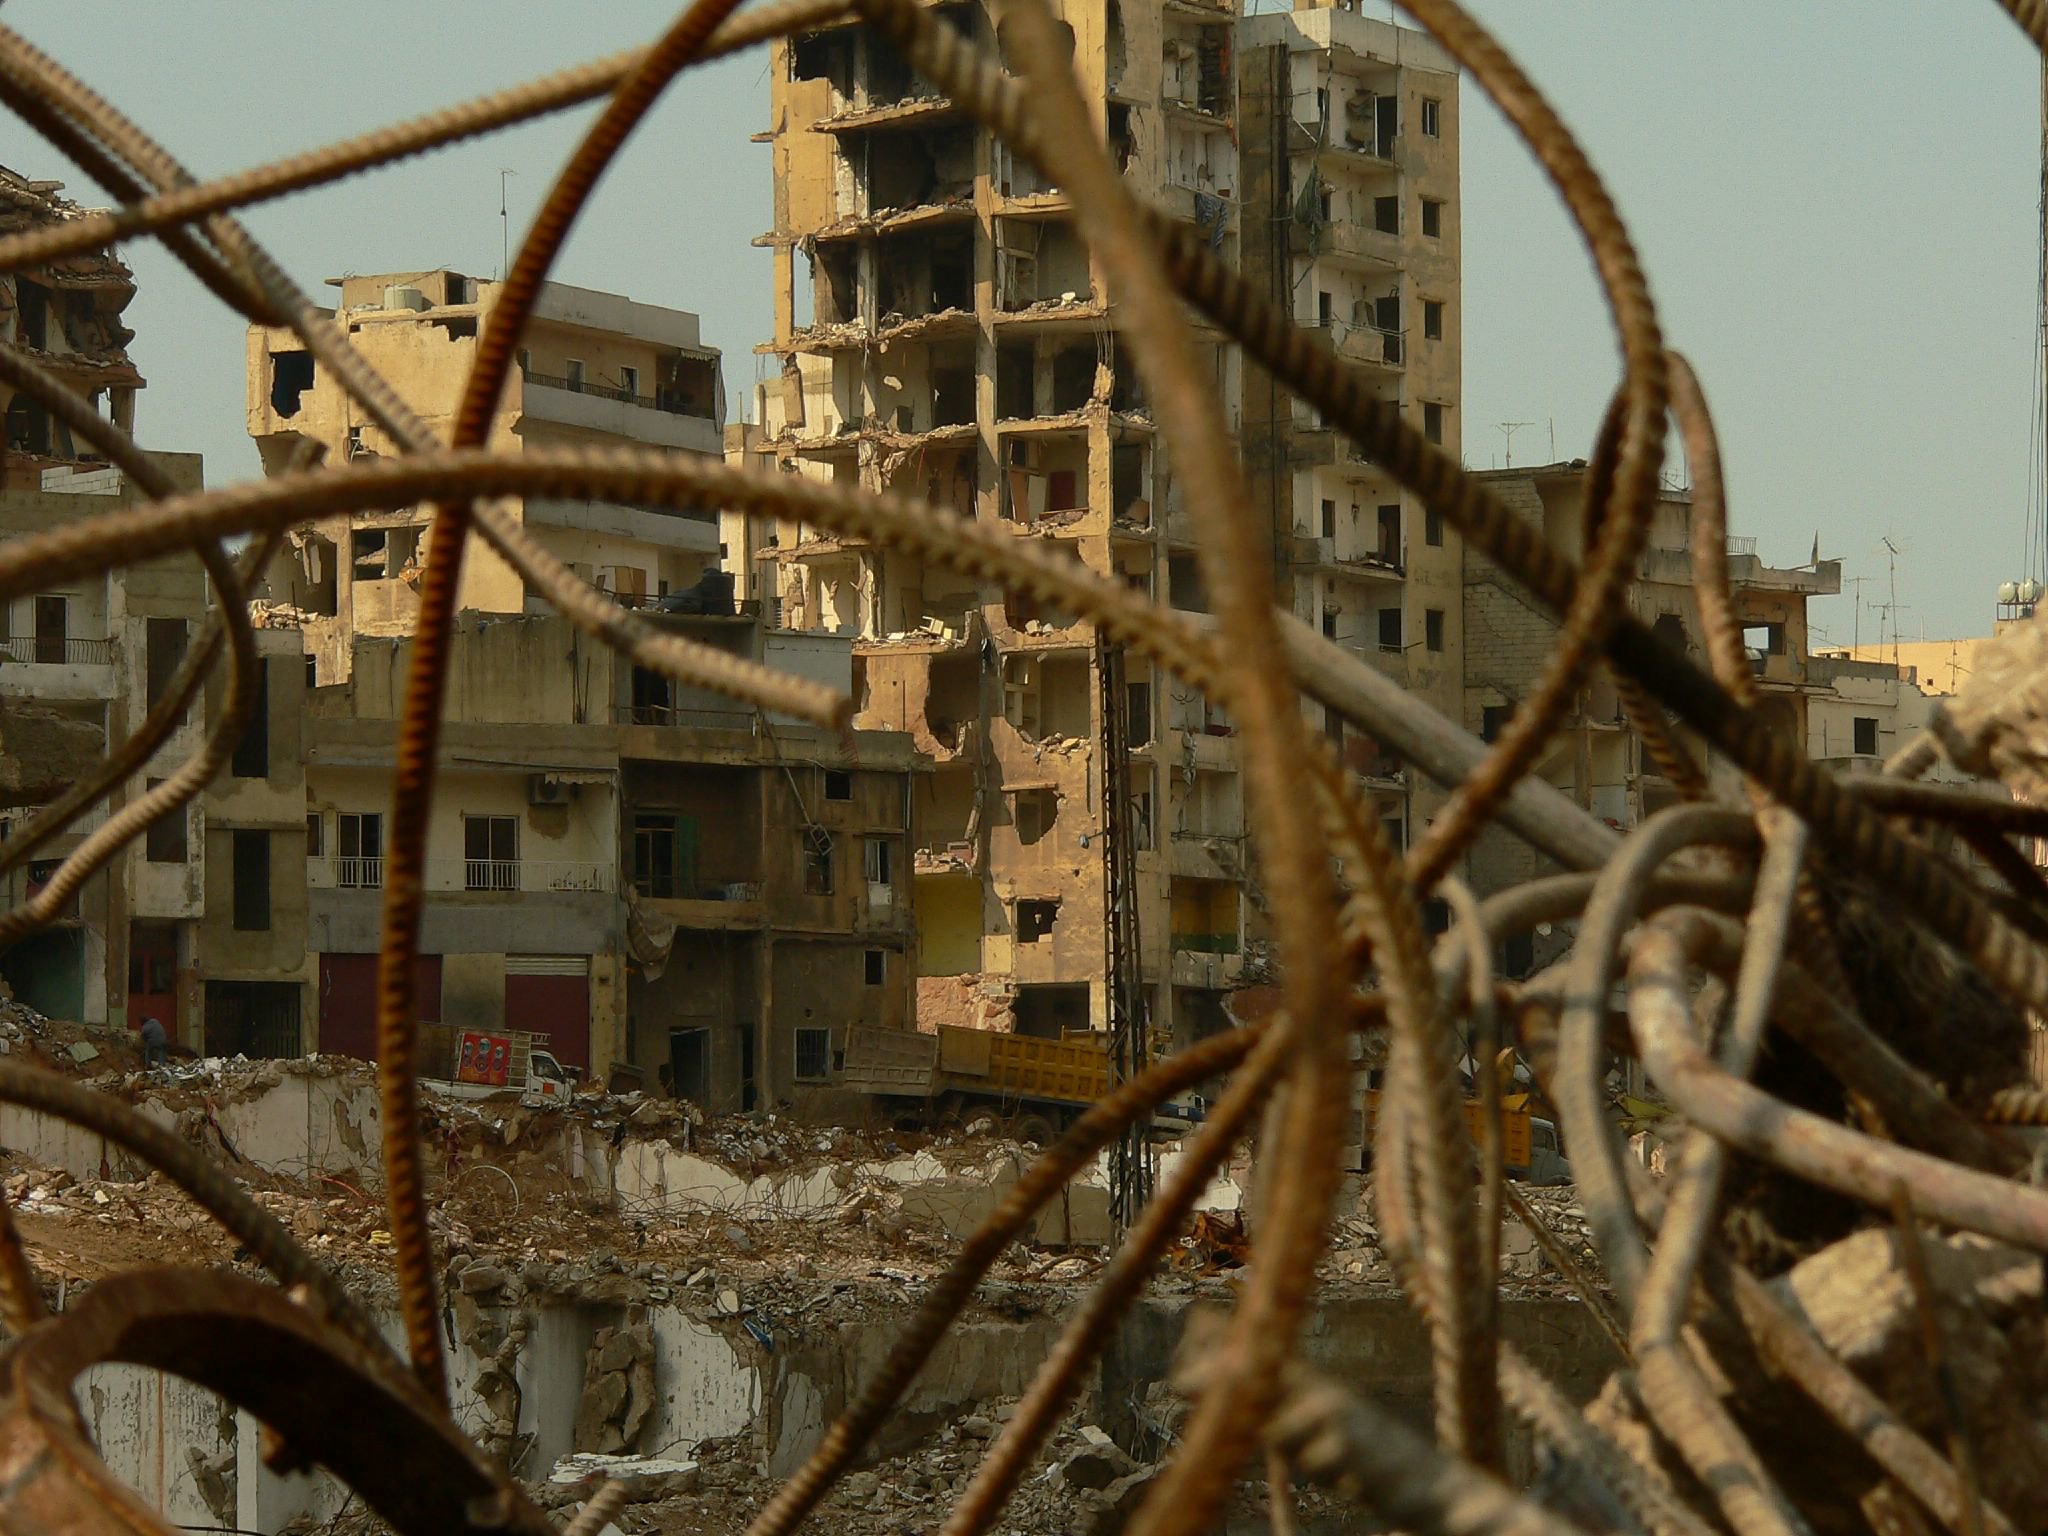 ב-2006 לבנון ידעה להתאושש מהמלחמה, הפעם זה יהיה יותר קשה. שכונת דאחיה בביירות ב-2006 (צילום: דימיטרי זאגרבלני CC BY SA 2.0 DEED) 